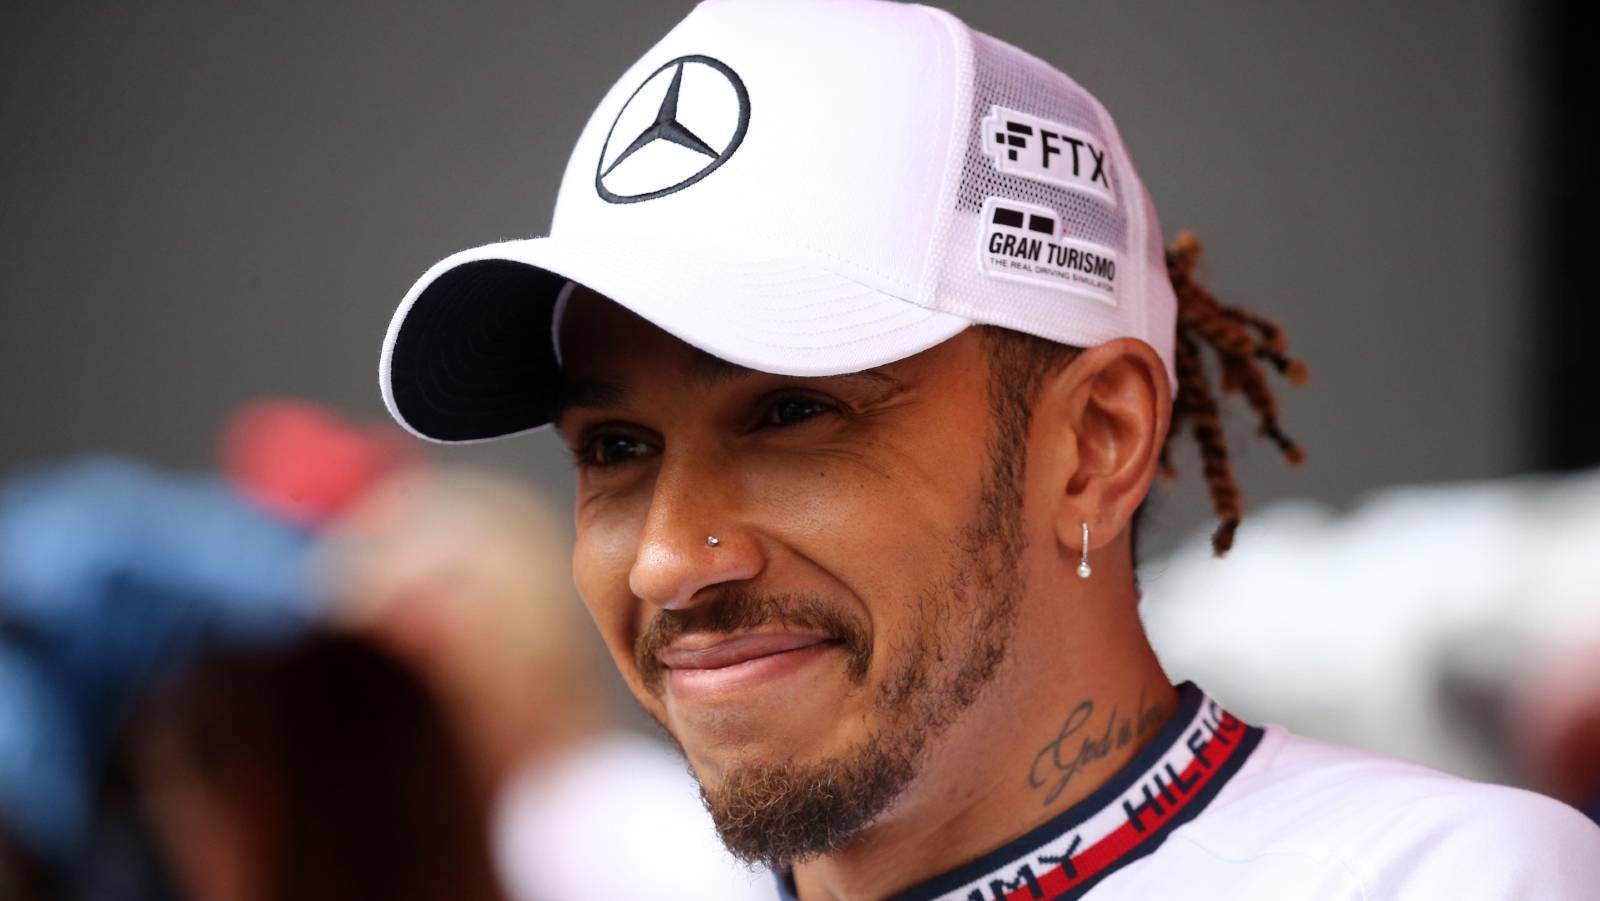 Lewis Hamilton wearing white Mercedes cap. Monaco May 2022.